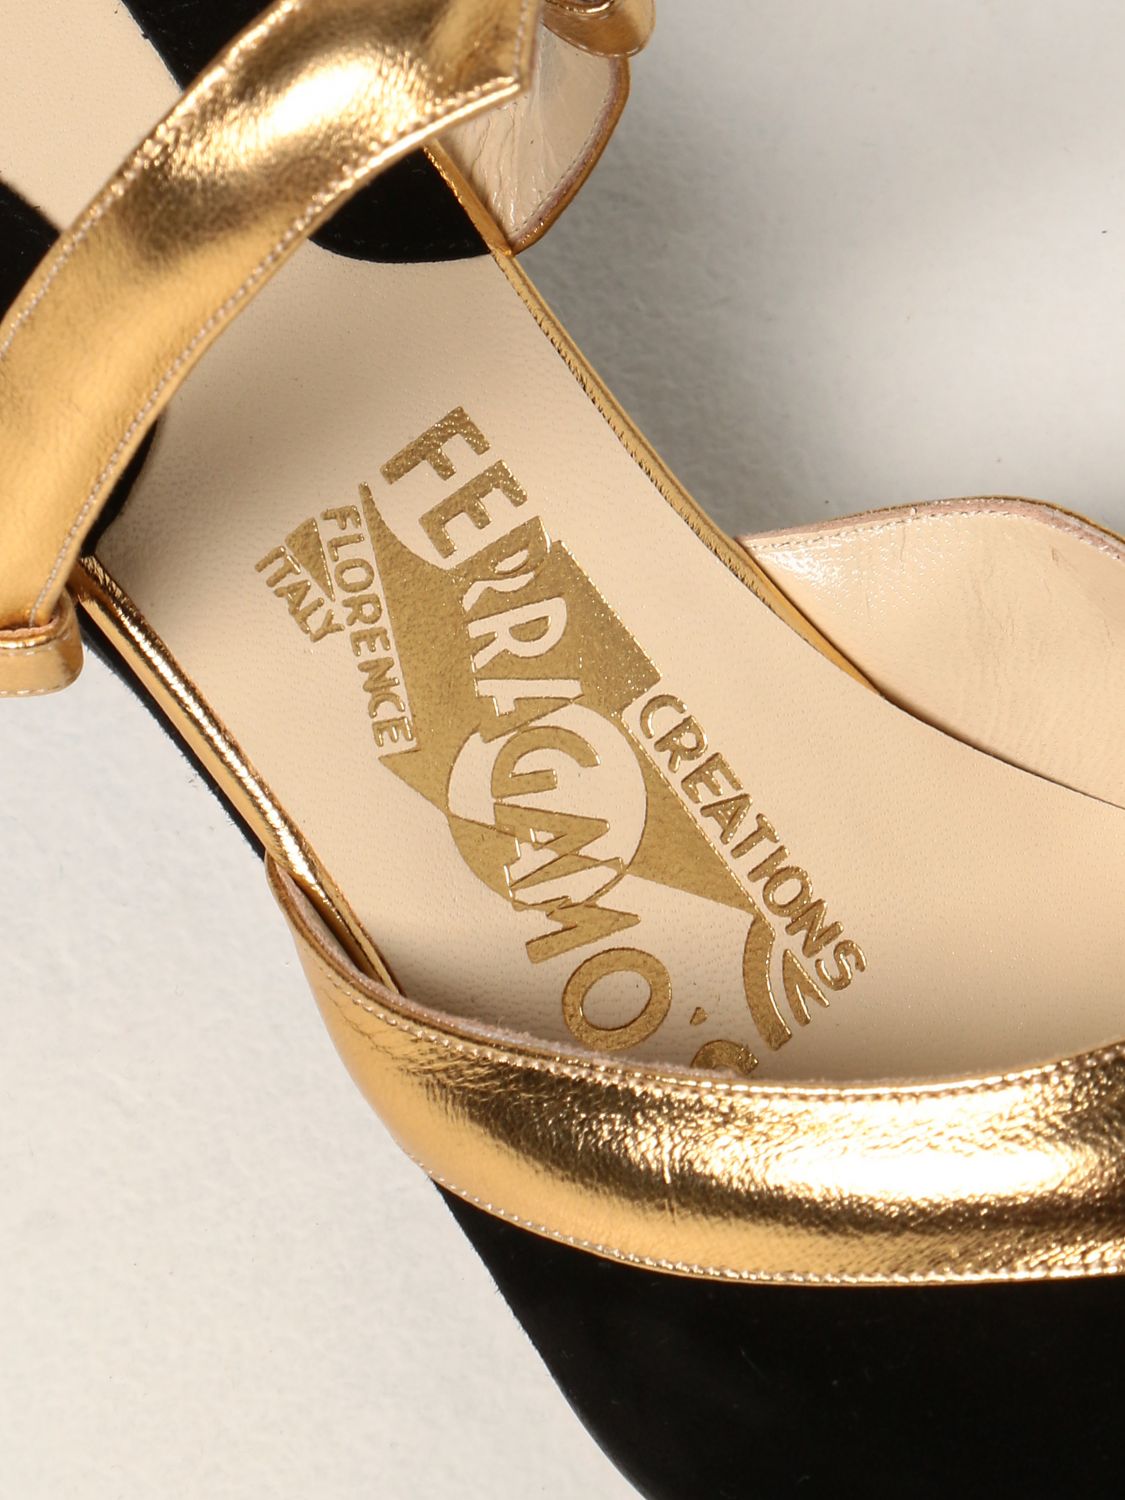 坡跟鞋 Salvatore Ferragamo: 专利 1939 “Ferragamo's Creation” Salvatore Ferragamo 凉鞋 黑色 5